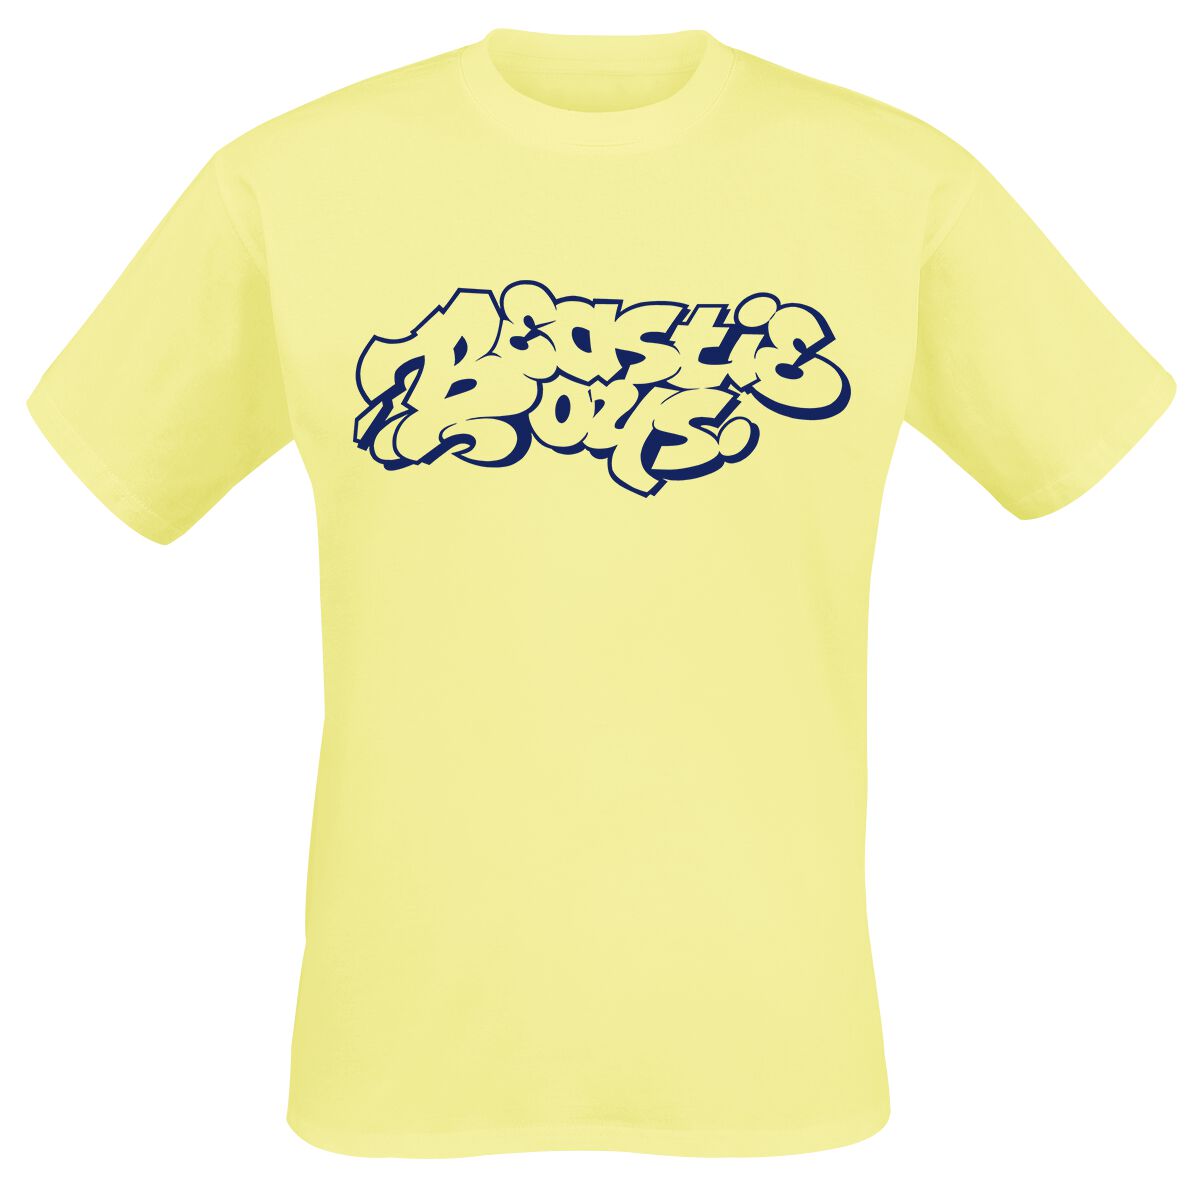 Beastie Boys T-Shirt - Graffiti Logo - S bis M - für Männer - Größe M - gelb  - Lizenziertes Merchandise!